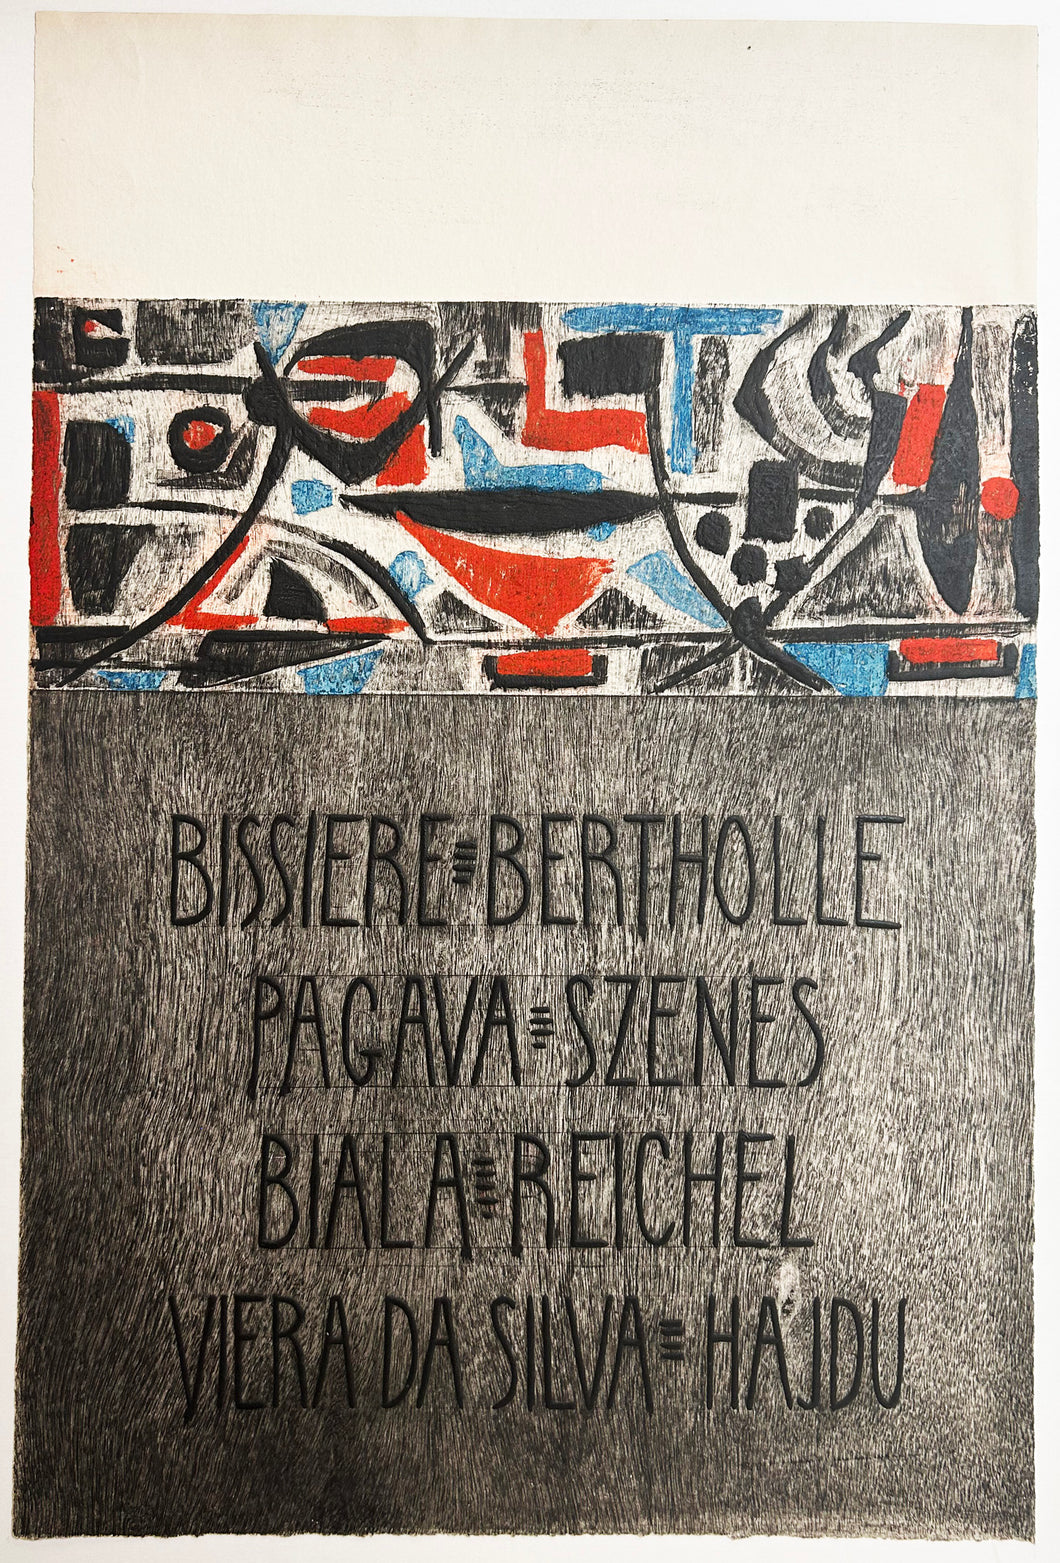 Affiche pour une exposition collective à la Galerie Jeanne Bucher: Bissière, Bertholle, Pagava, Szenes, Biala, Reichel, Vieira da Silva, Hajdu. 1953.